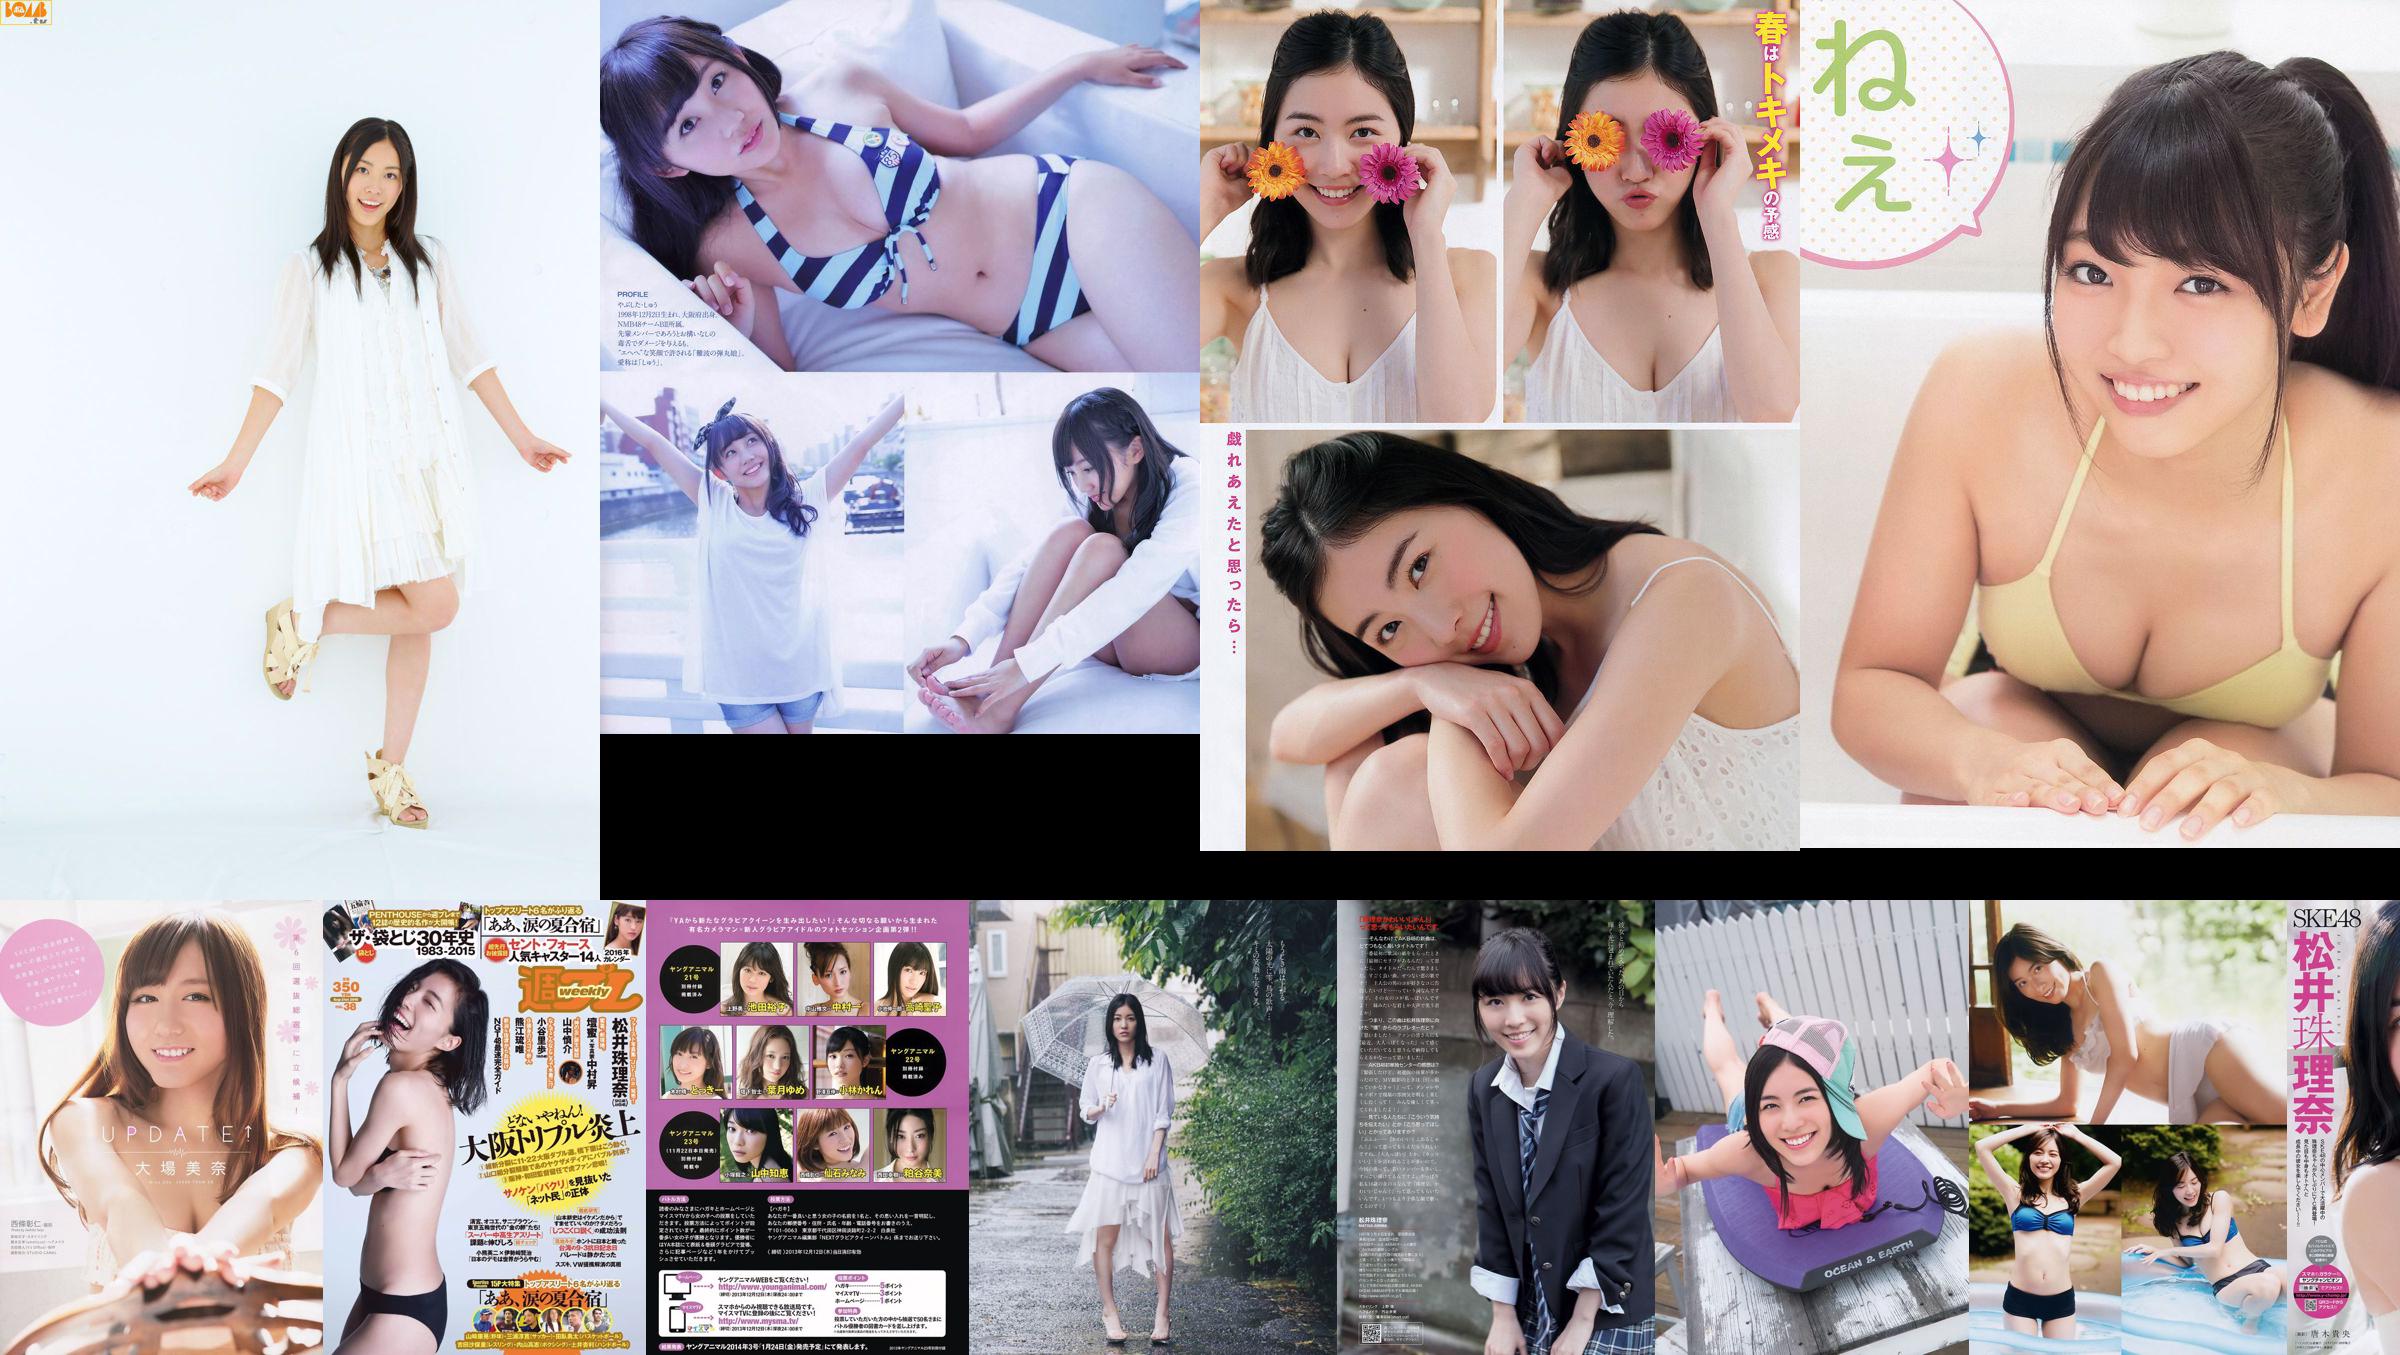 [FLASH] Jurina Matsui Manami Hashimoto Mariko Seyama Akane Takayanagi Mana Sakura 13/10/2015 Foto Moshi No.862b51 Página 1